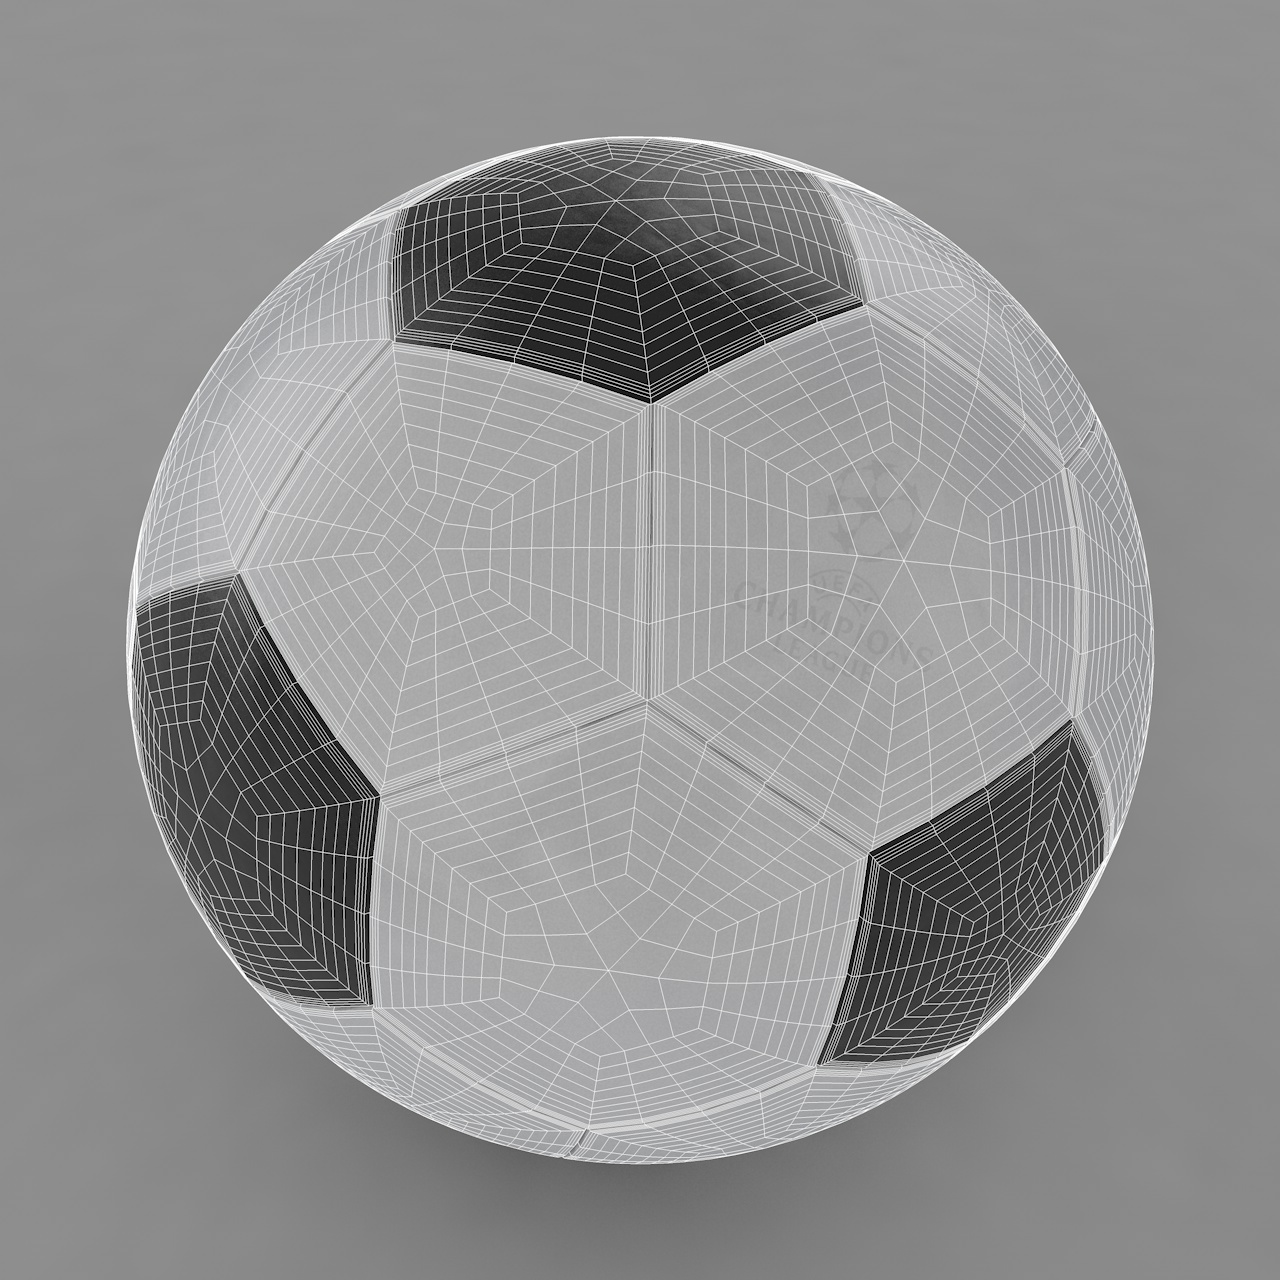 足球3d模型